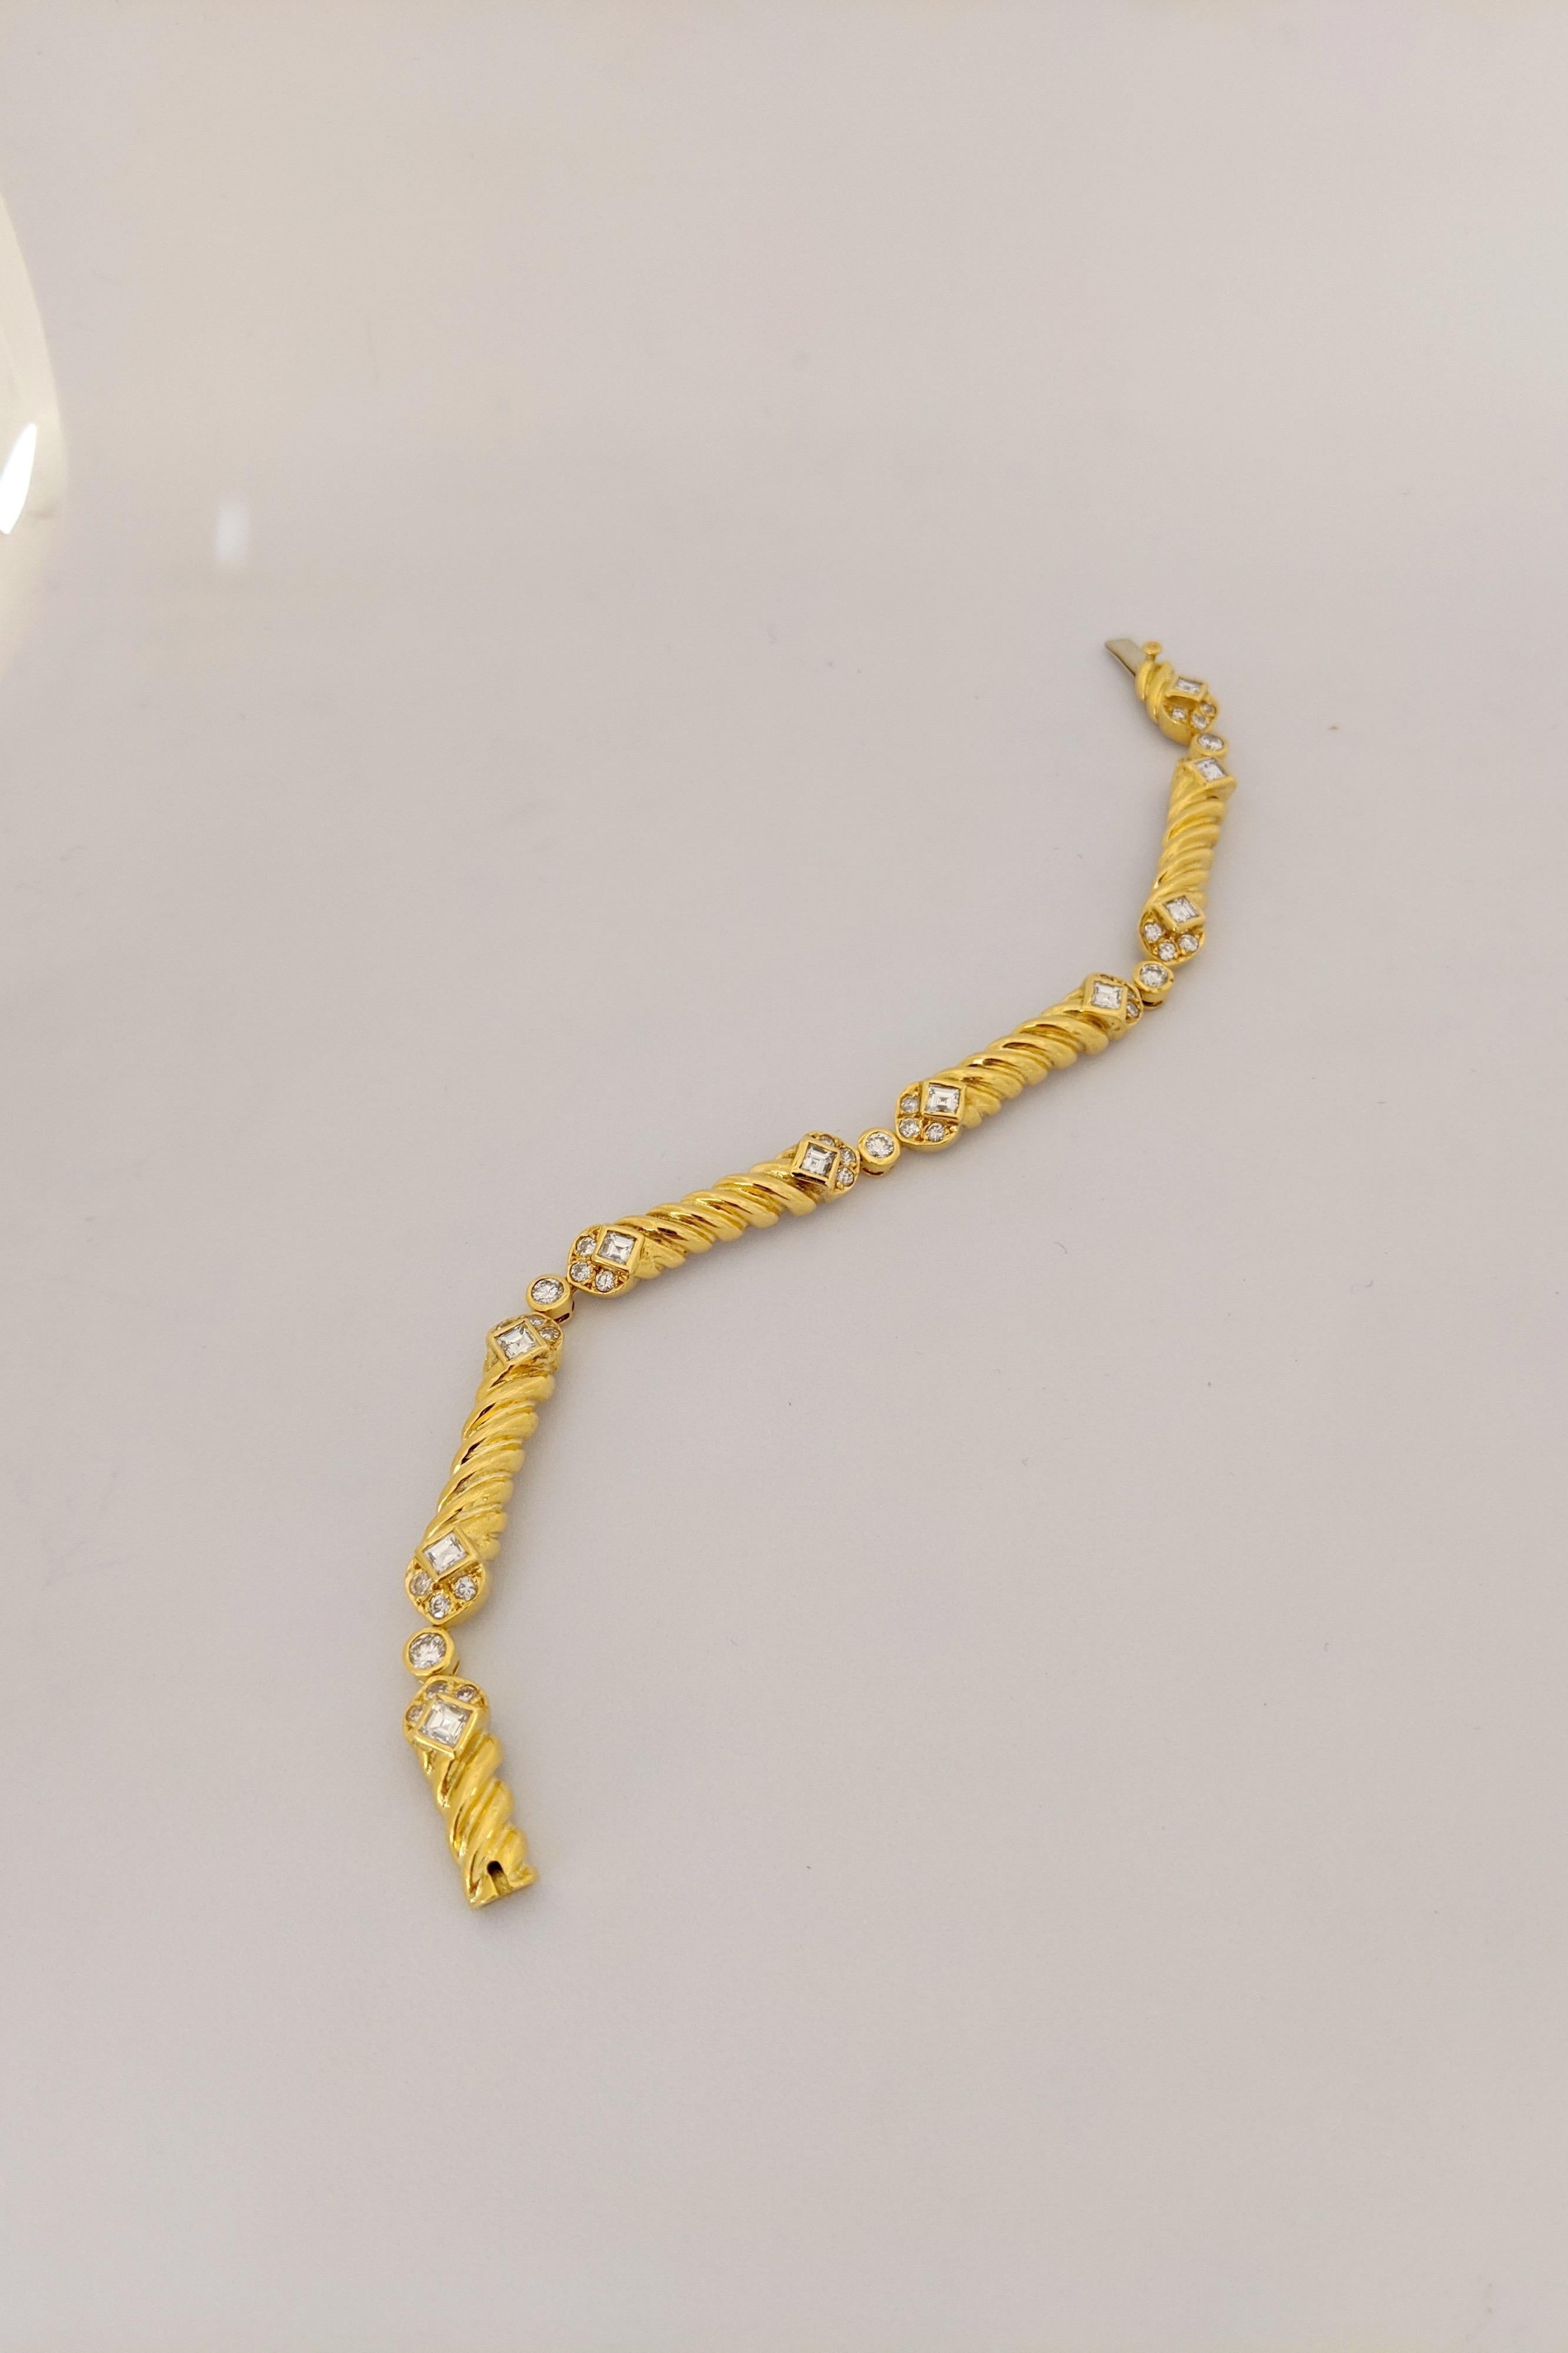 Dieses Armband ist mit 5 gerippten Gliedern aus 18 Karat Gelbgold gestaltet. Jedes Glied ist mit 6 runden Brillanten und 2 quadratischen Diamanten im Smaragdschliff besetzt. Die Glieder sind dann mit runden, eingefassten Diamanten verbunden. Das